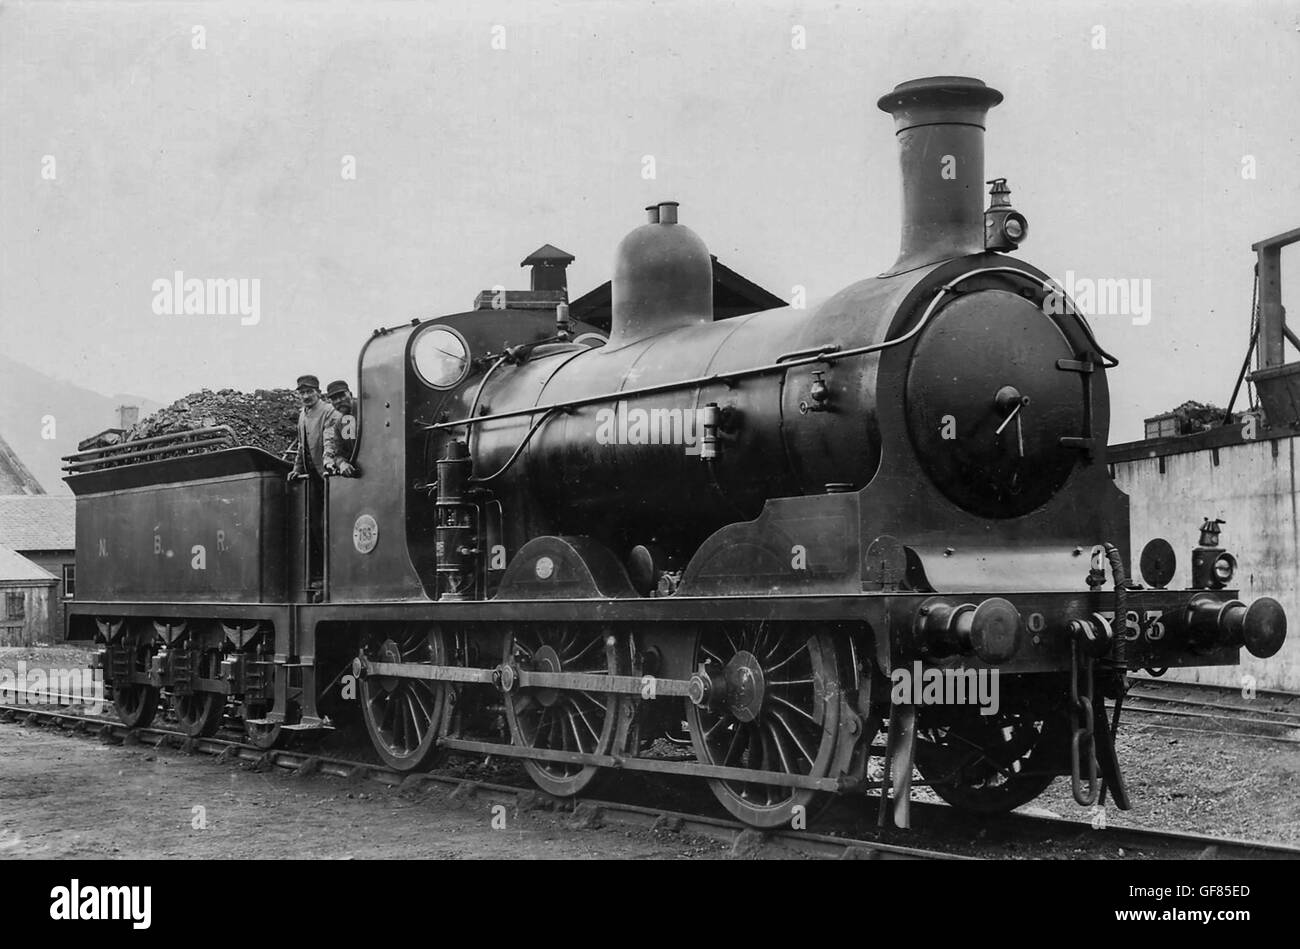 NBR J36 0-6-0 locomotive No.783 Stock Photo - Alamy